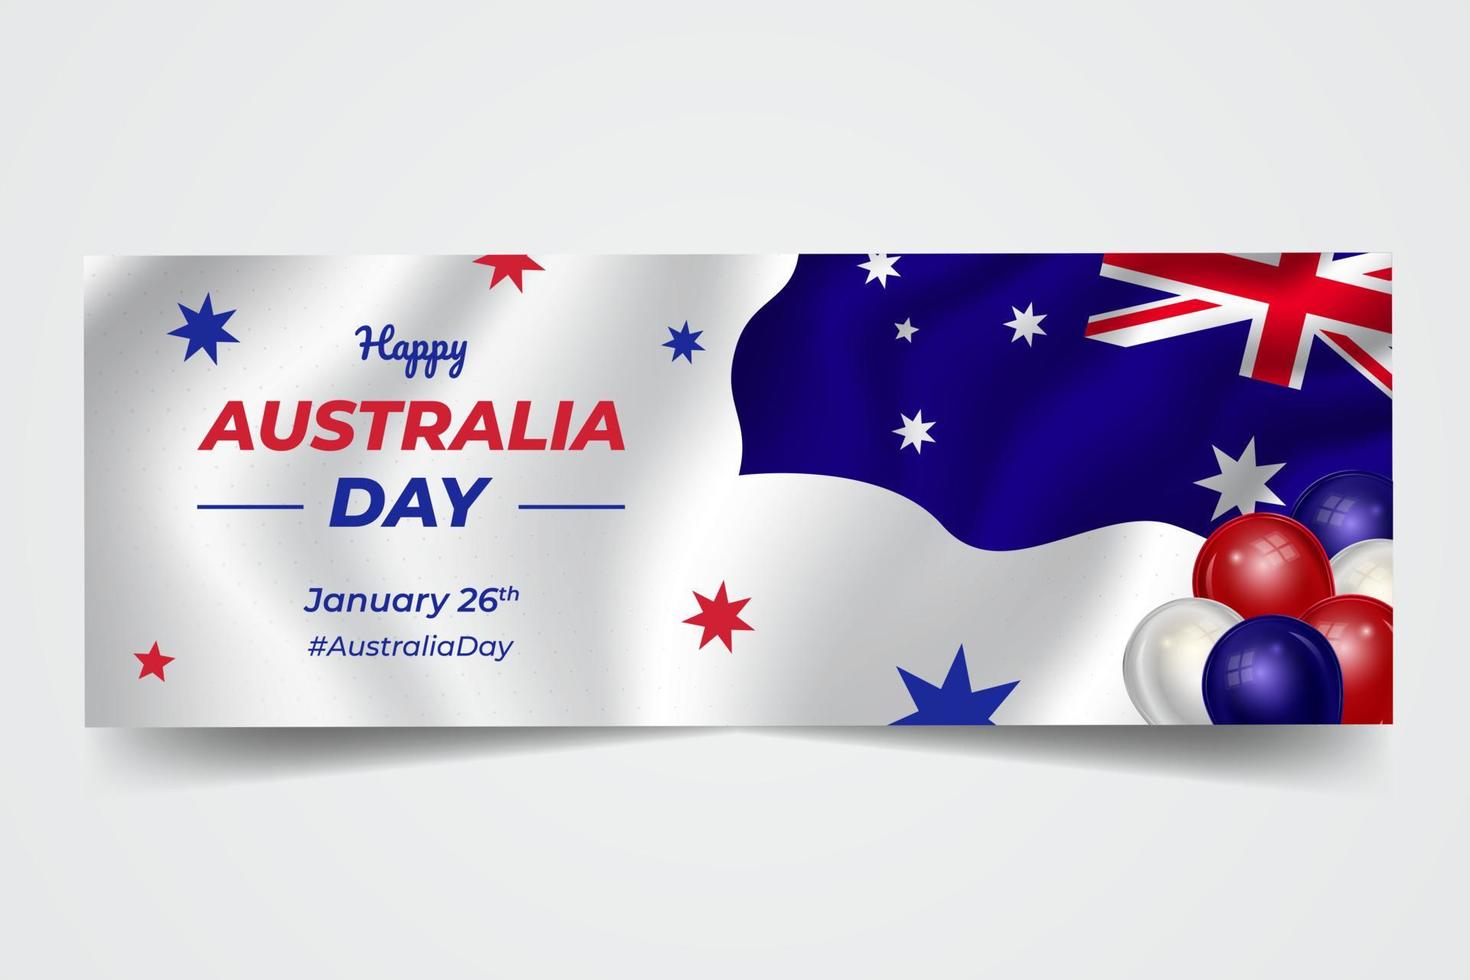 schwenkende flagge mit australien tag 26. januar feier banner auf isoliertem hintergrund vektor